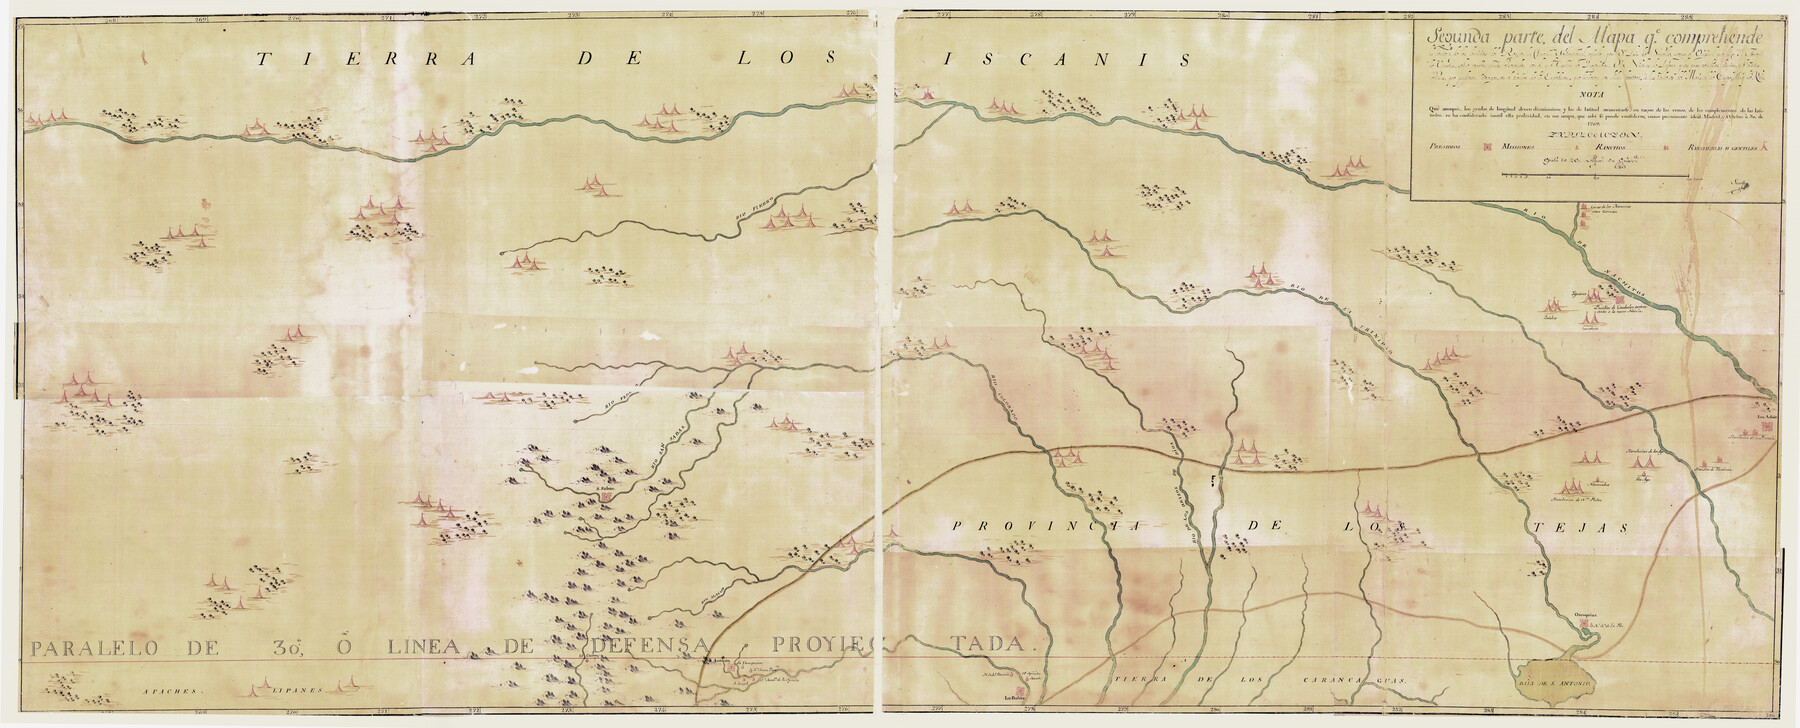 4667, Segunda parte del Mapa, que comprende la Frontera, de los Dominios del Rey, en la America Septentrional, General Map Collection